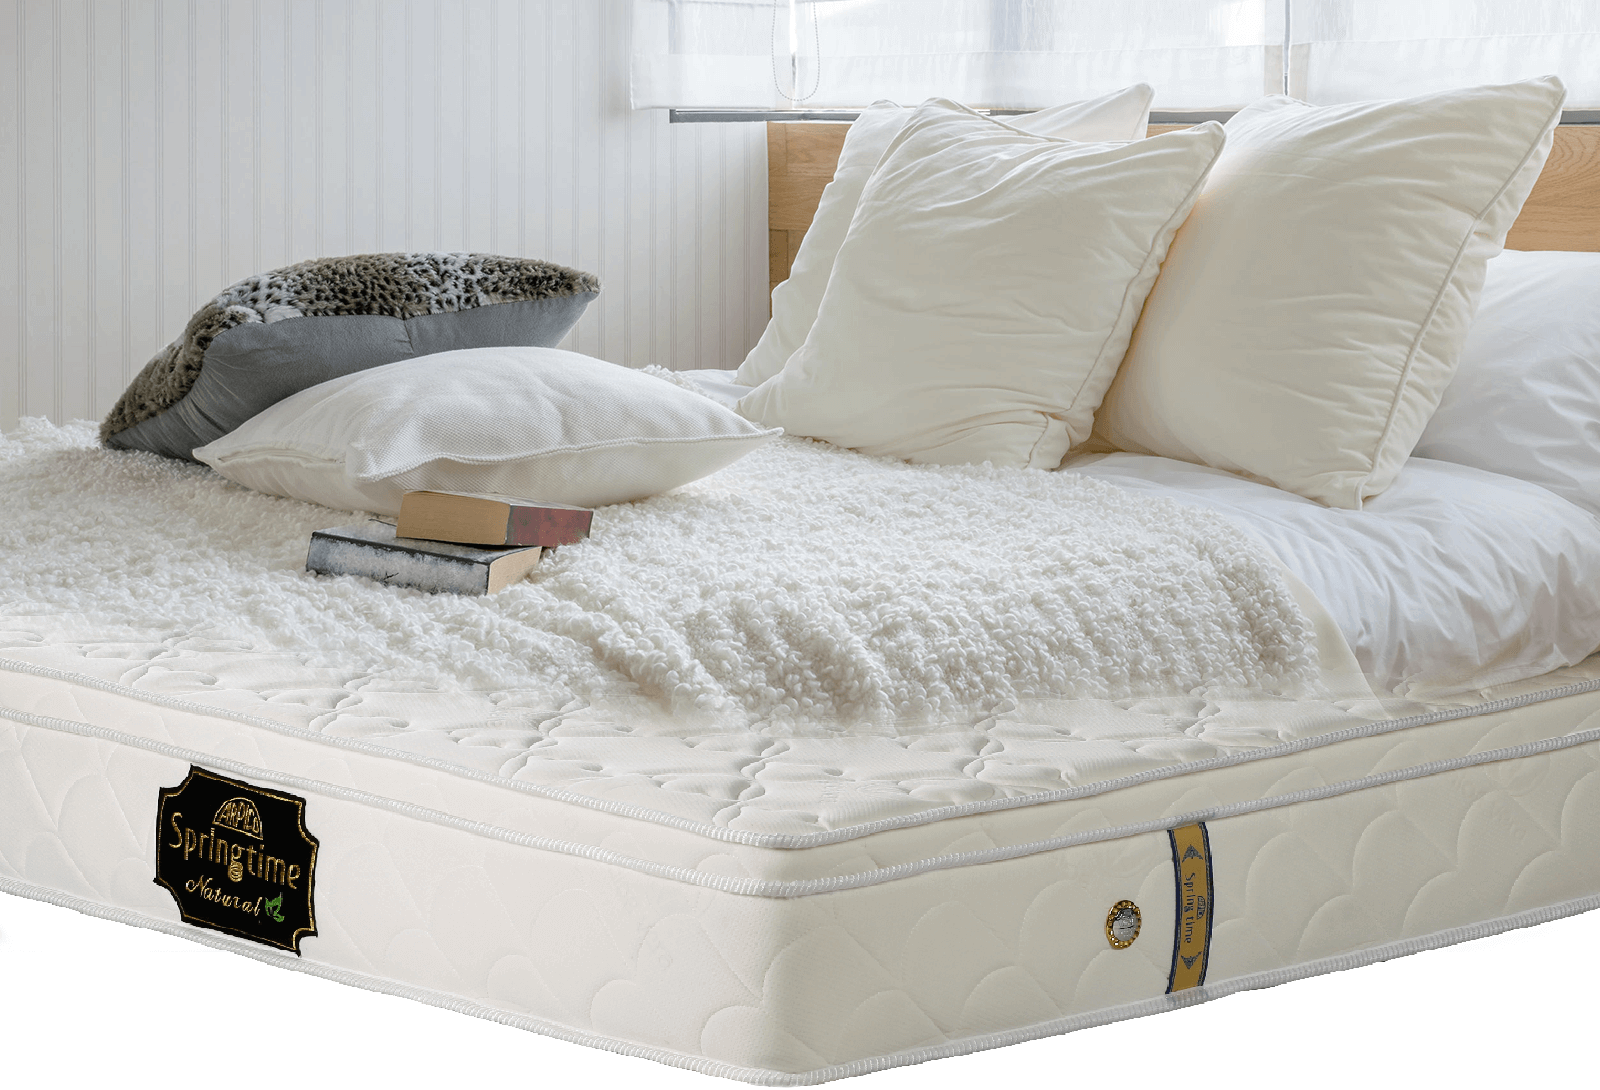 arpico single mattress price in sri lanka